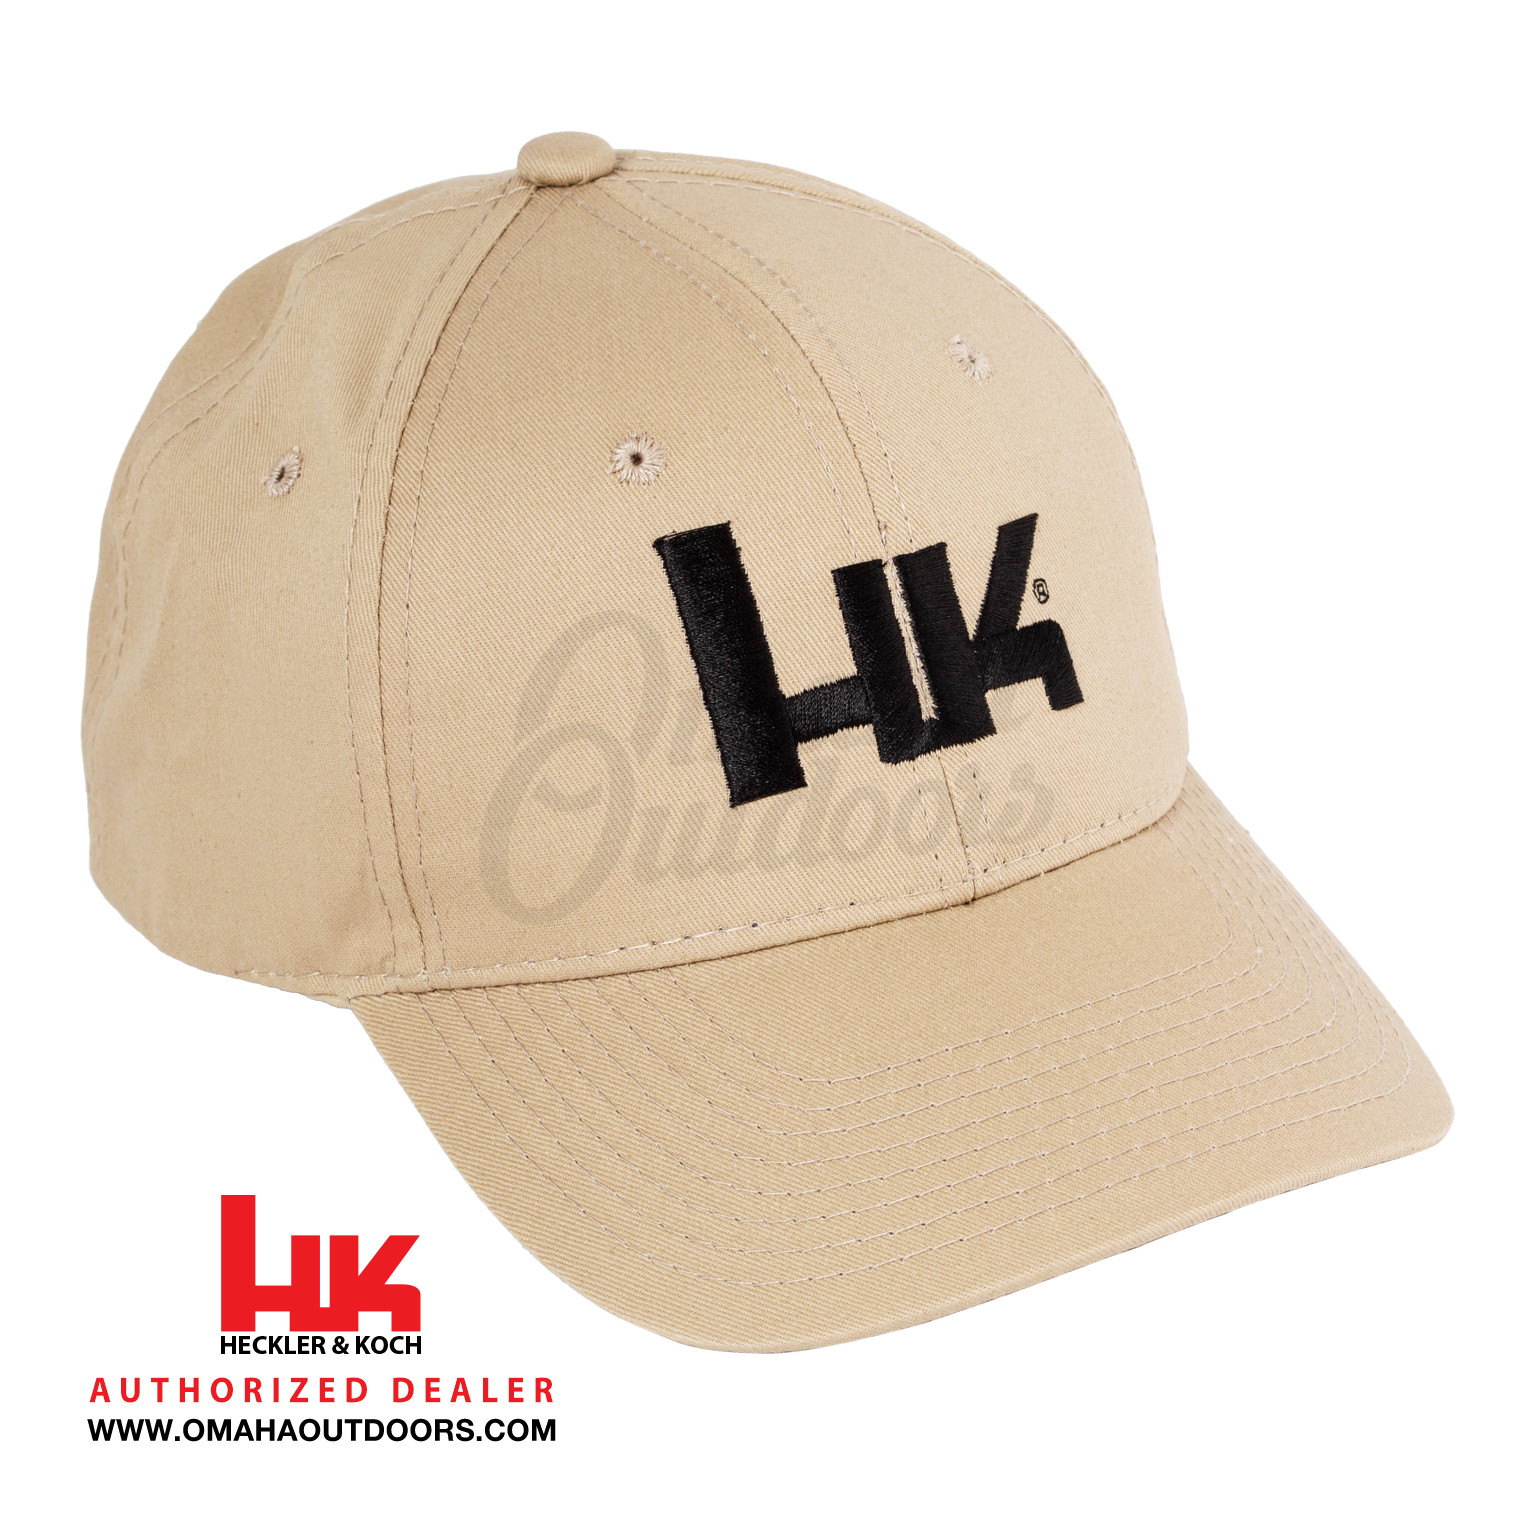 I Love HK heckler & koch logo Embordery hats cap